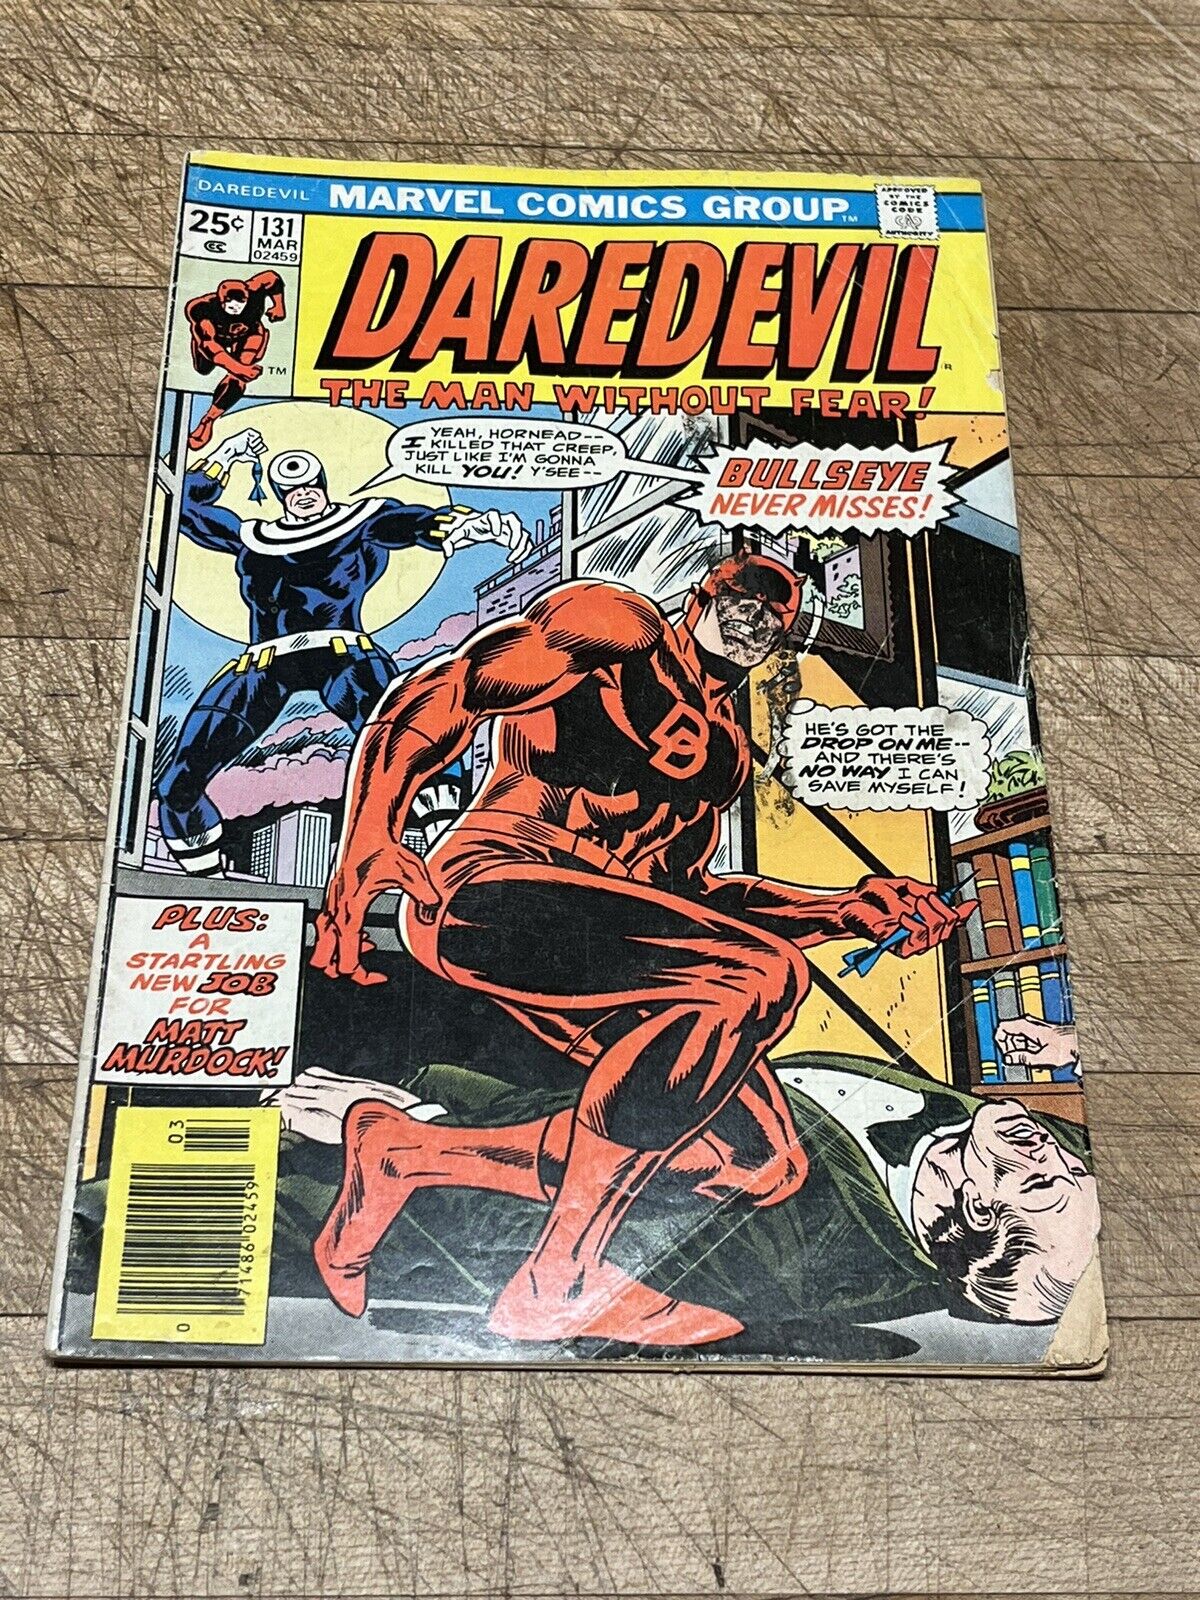 Daredevil #131 1st Appearance Bullseye and Origin Marvel 1976